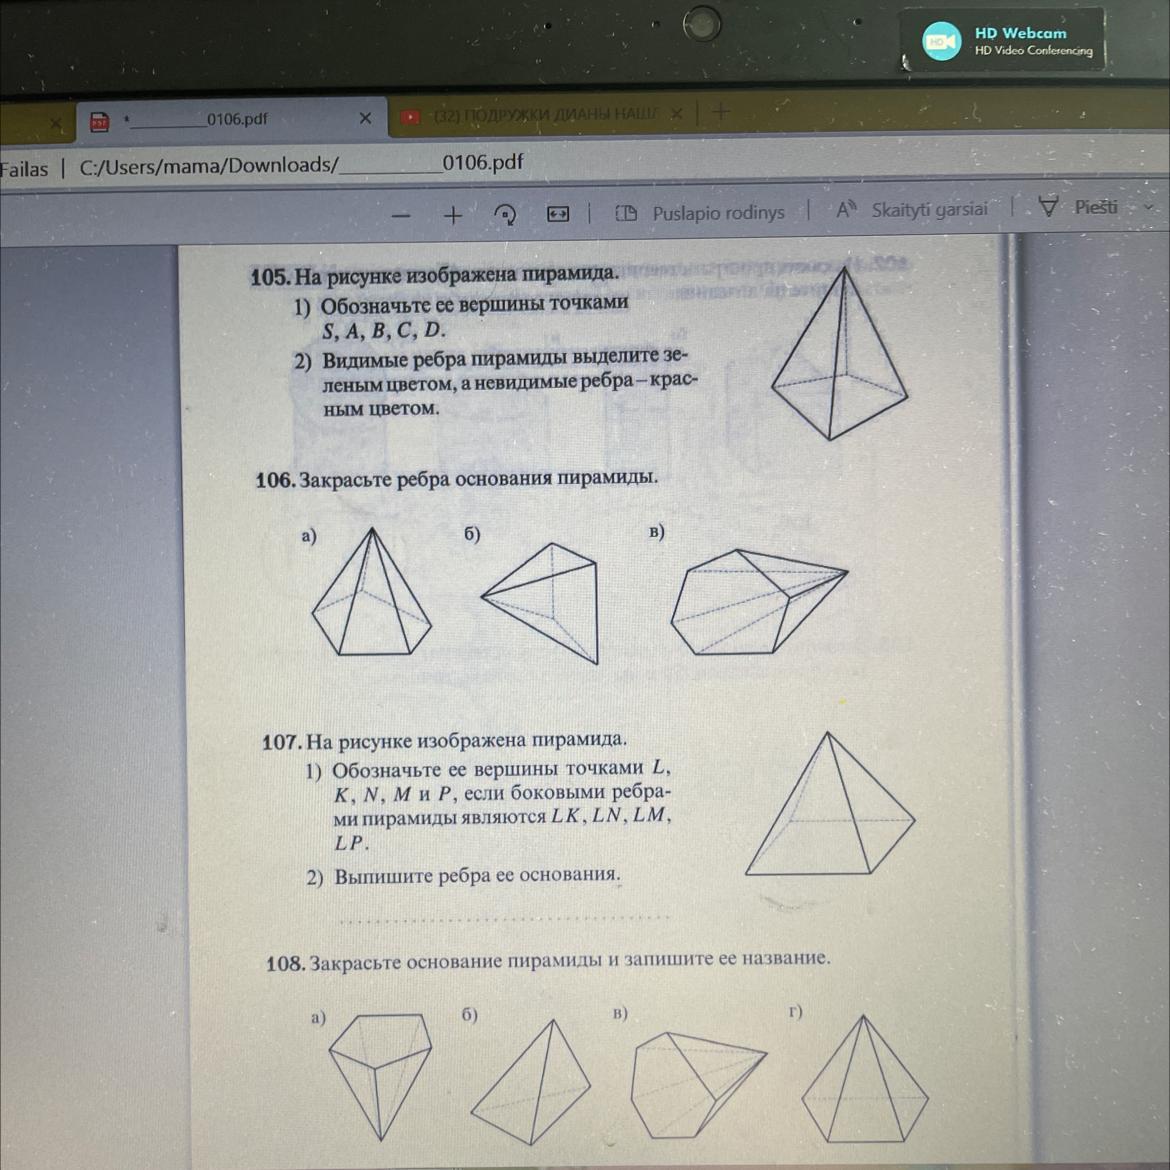 Обозначить проекции вершин пирамиды изображенной на рисунке 2.6